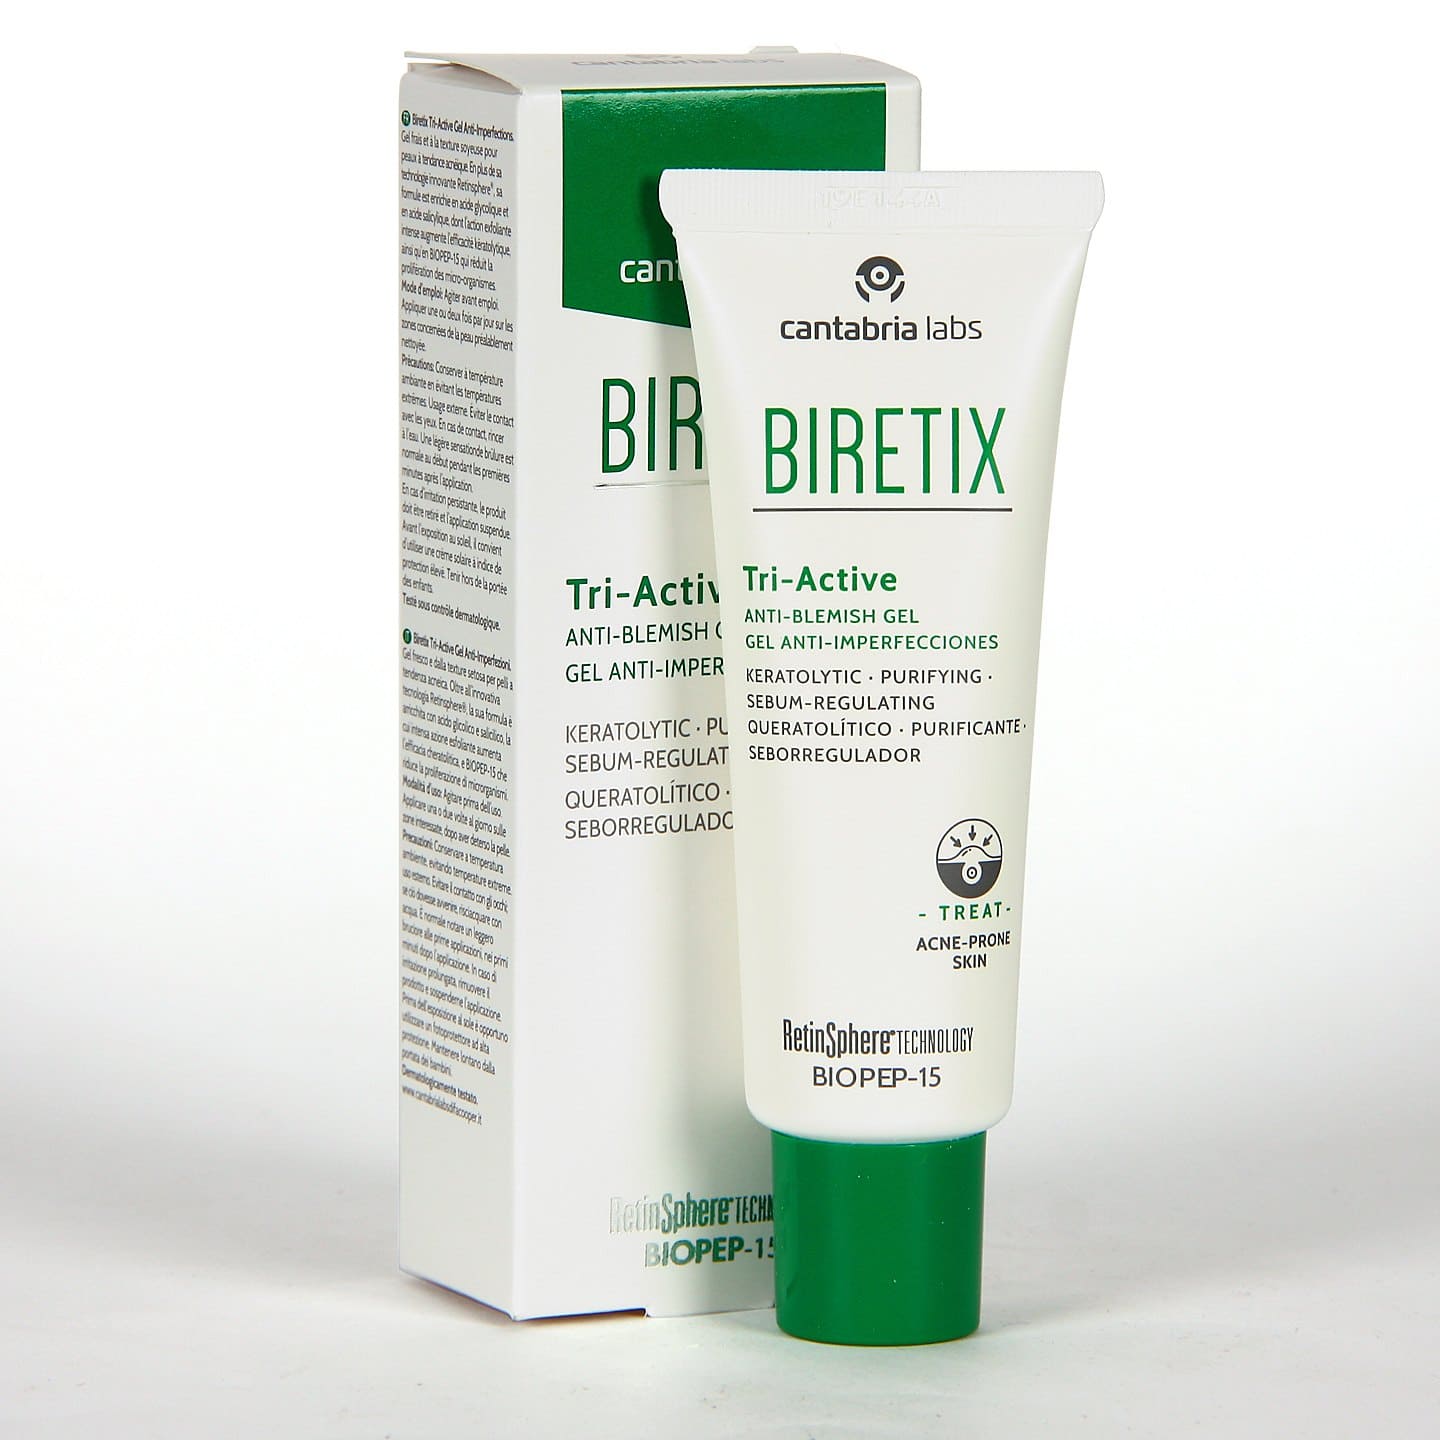 Biretix Tri-Active es un gel limpiador perfecto para pieles acneicas